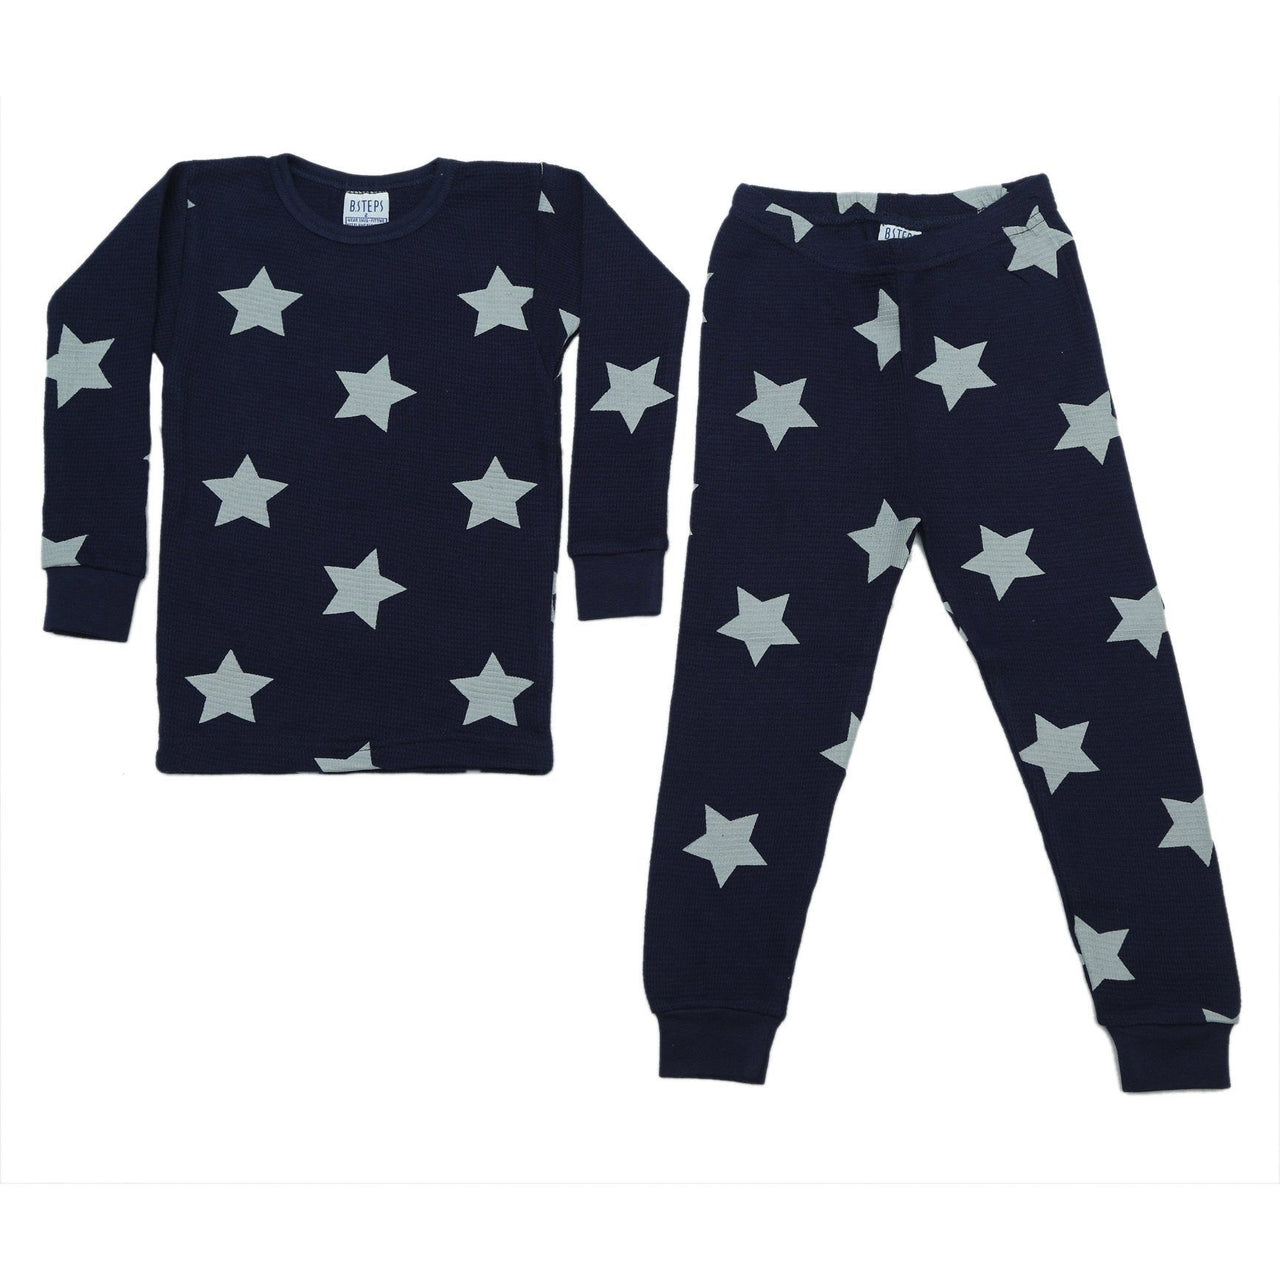 navy thermal with gray stars pajamas